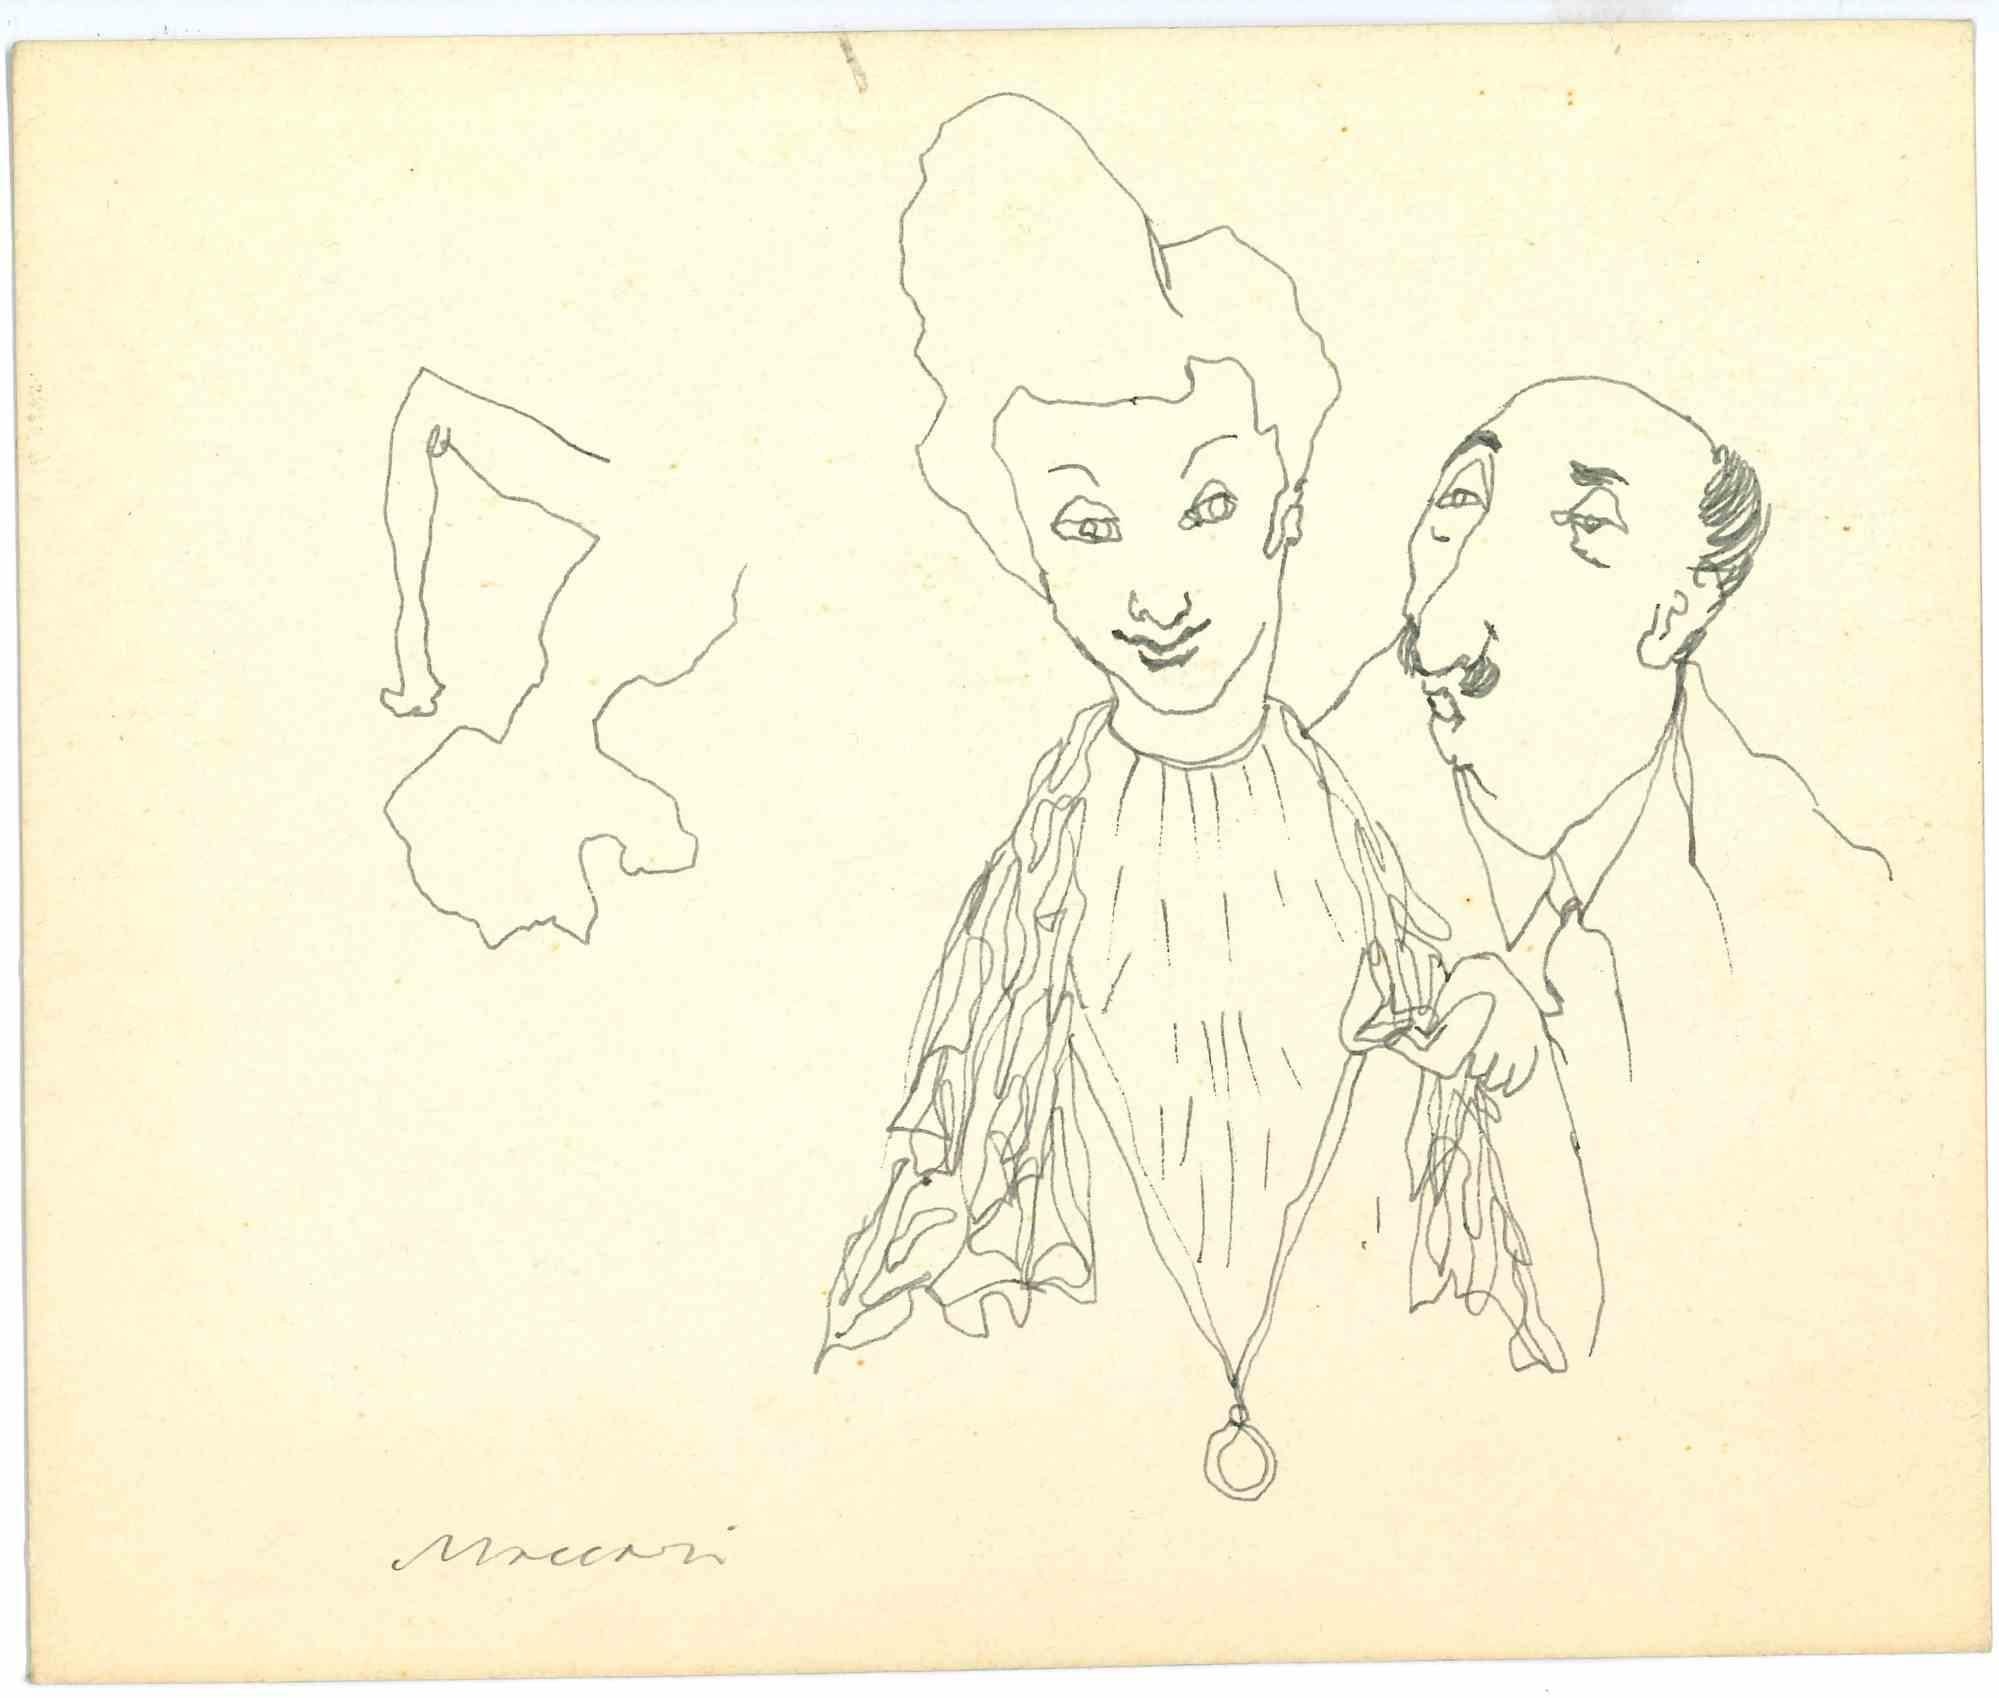 Das Paar ist eine Federzeichnung von Mino Maccari  (1924-1989) in den 1940er Jahren.

Handsigniert auf der Unterseite.

Guter Zustand.

Mino Maccari (Siena, 1924-Rom, 16. Juni 1989) war ein italienischer Schriftsteller, Maler, Graveur und